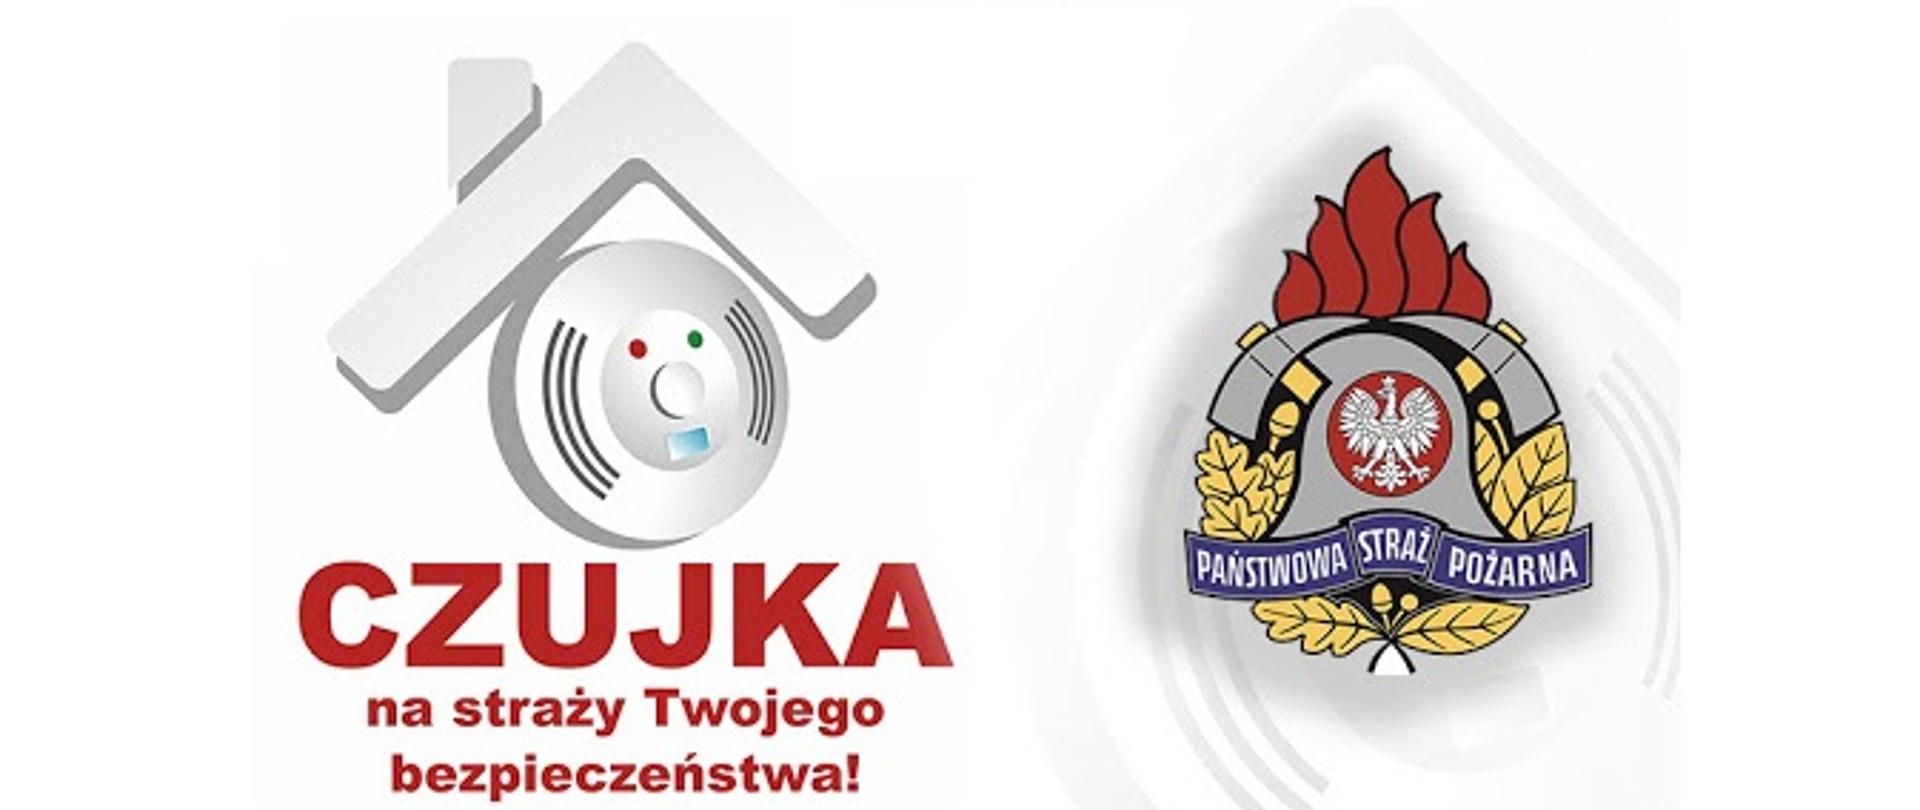 Grafika przedstawia logo kampanii "Czujka na strazy Twojego bezpieczeństwa" oraz logo Państwowej Straży Pożarnej